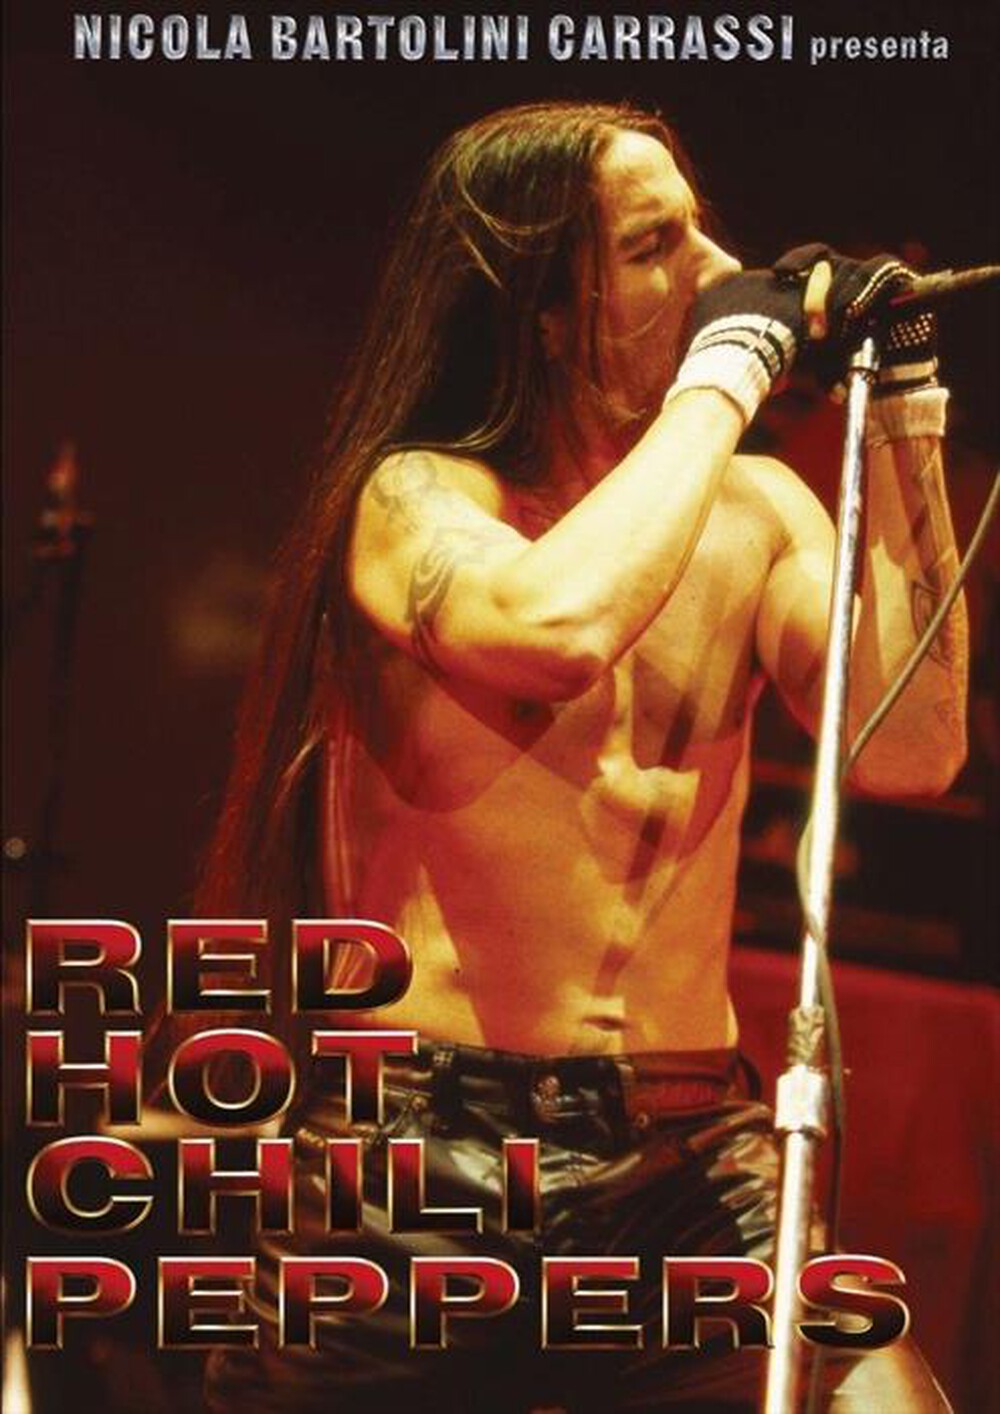 "CECCHI GORI - Red Hot Chili Peppers - Phenomenon"